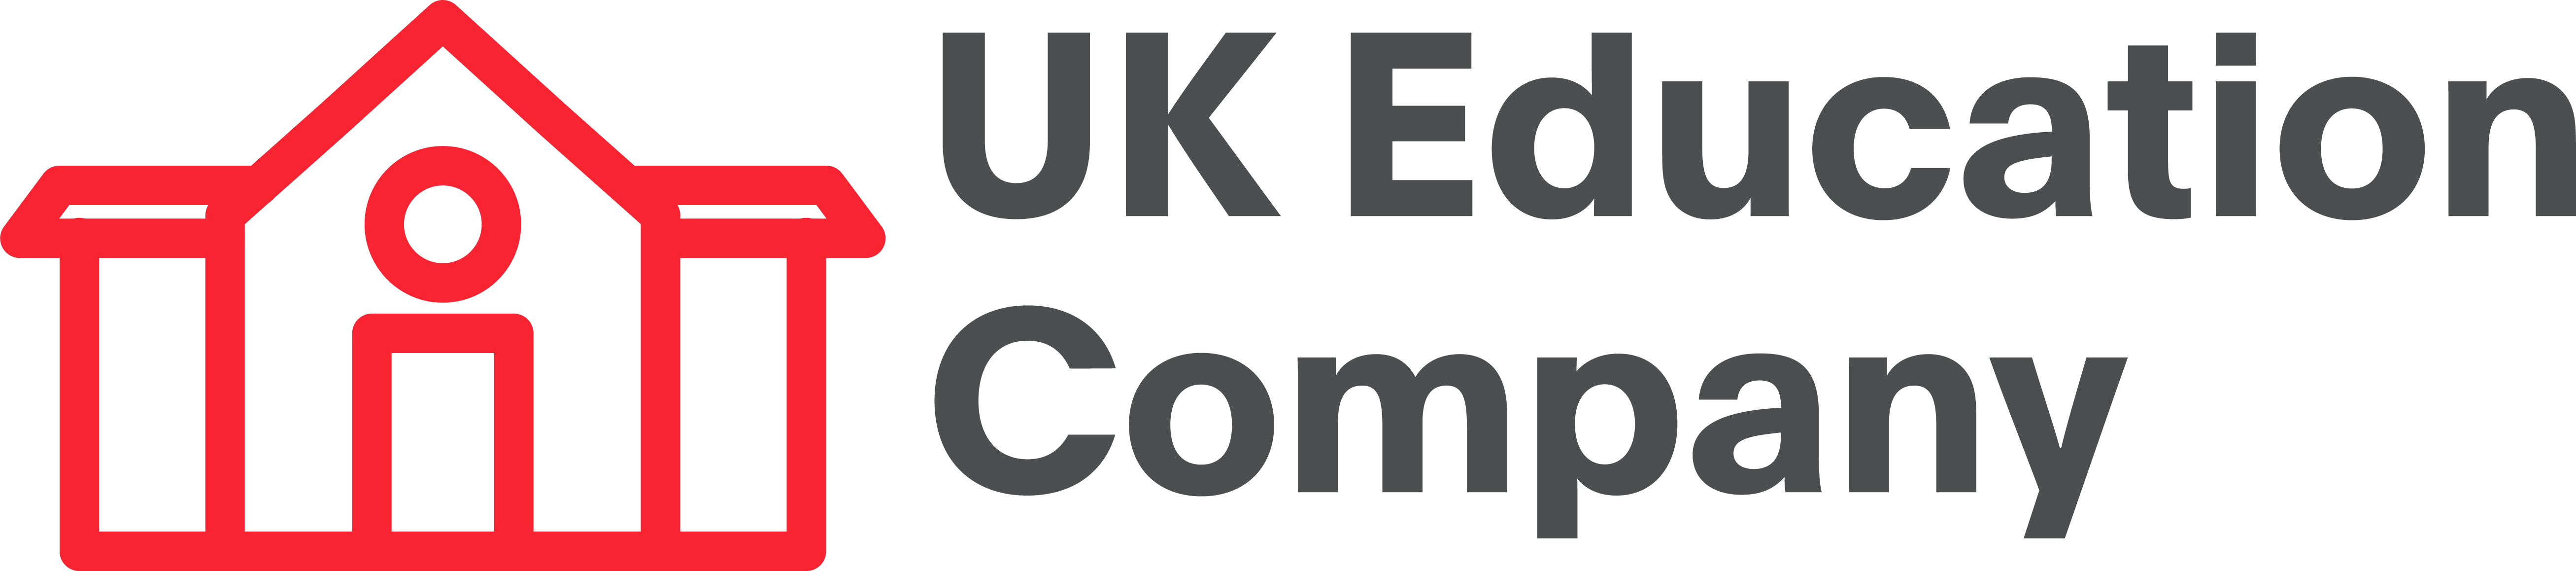 UK Education Company Hero